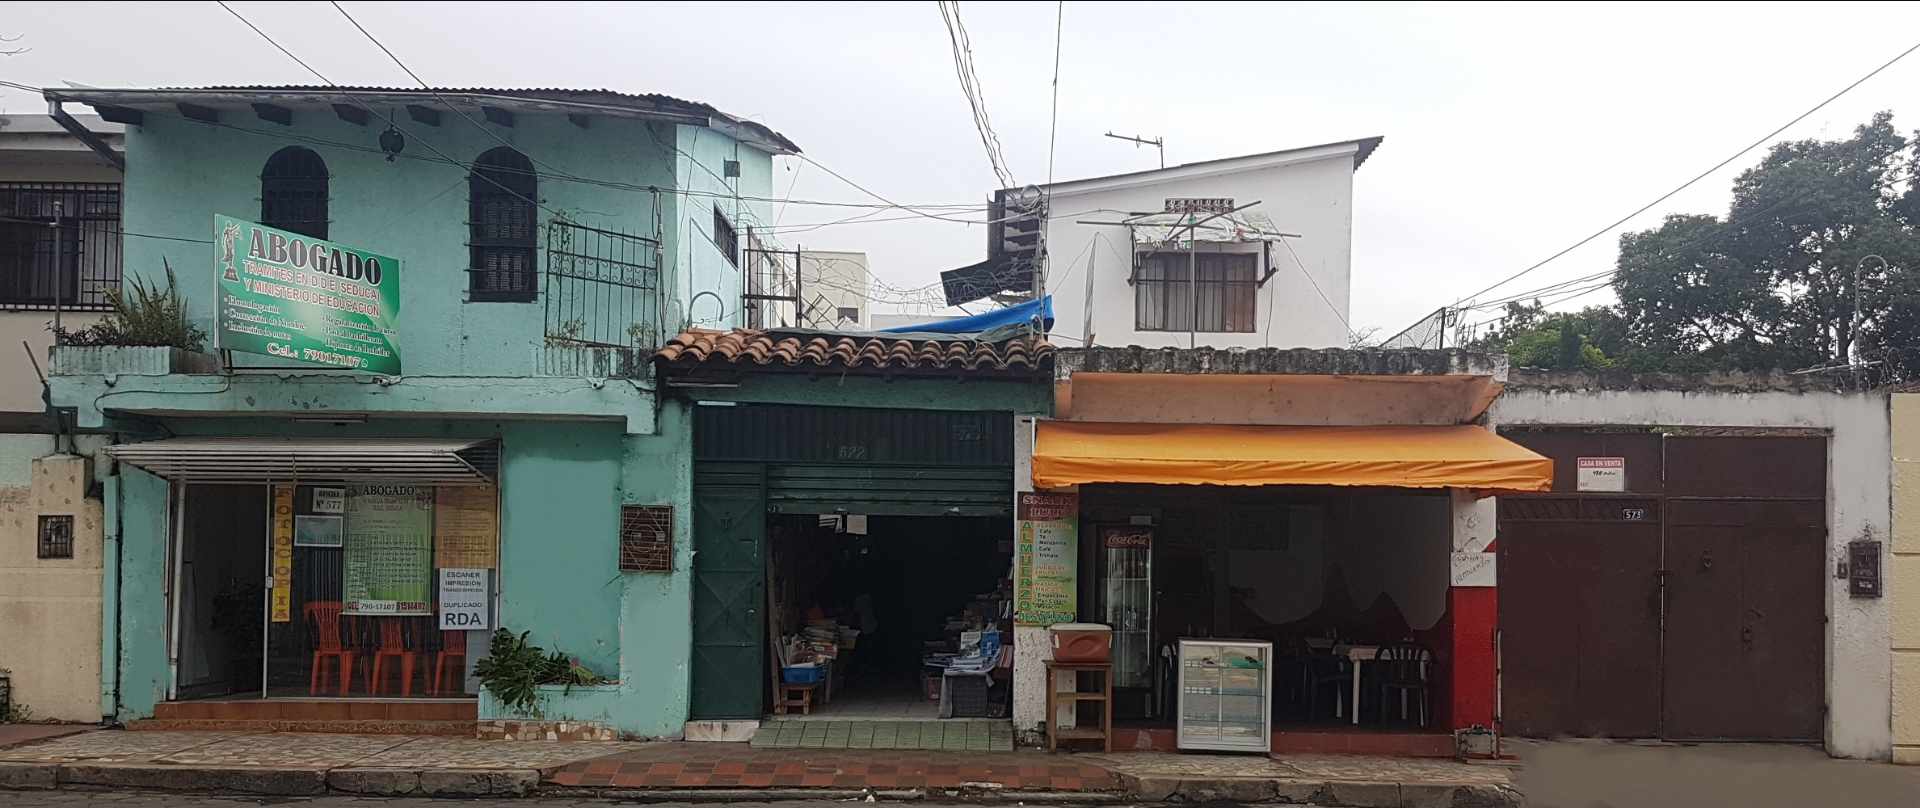 Local comercial Zona centro C/ La Paz #577 entre Moldes y Manuel Ignacio Salvatierra Foto 1